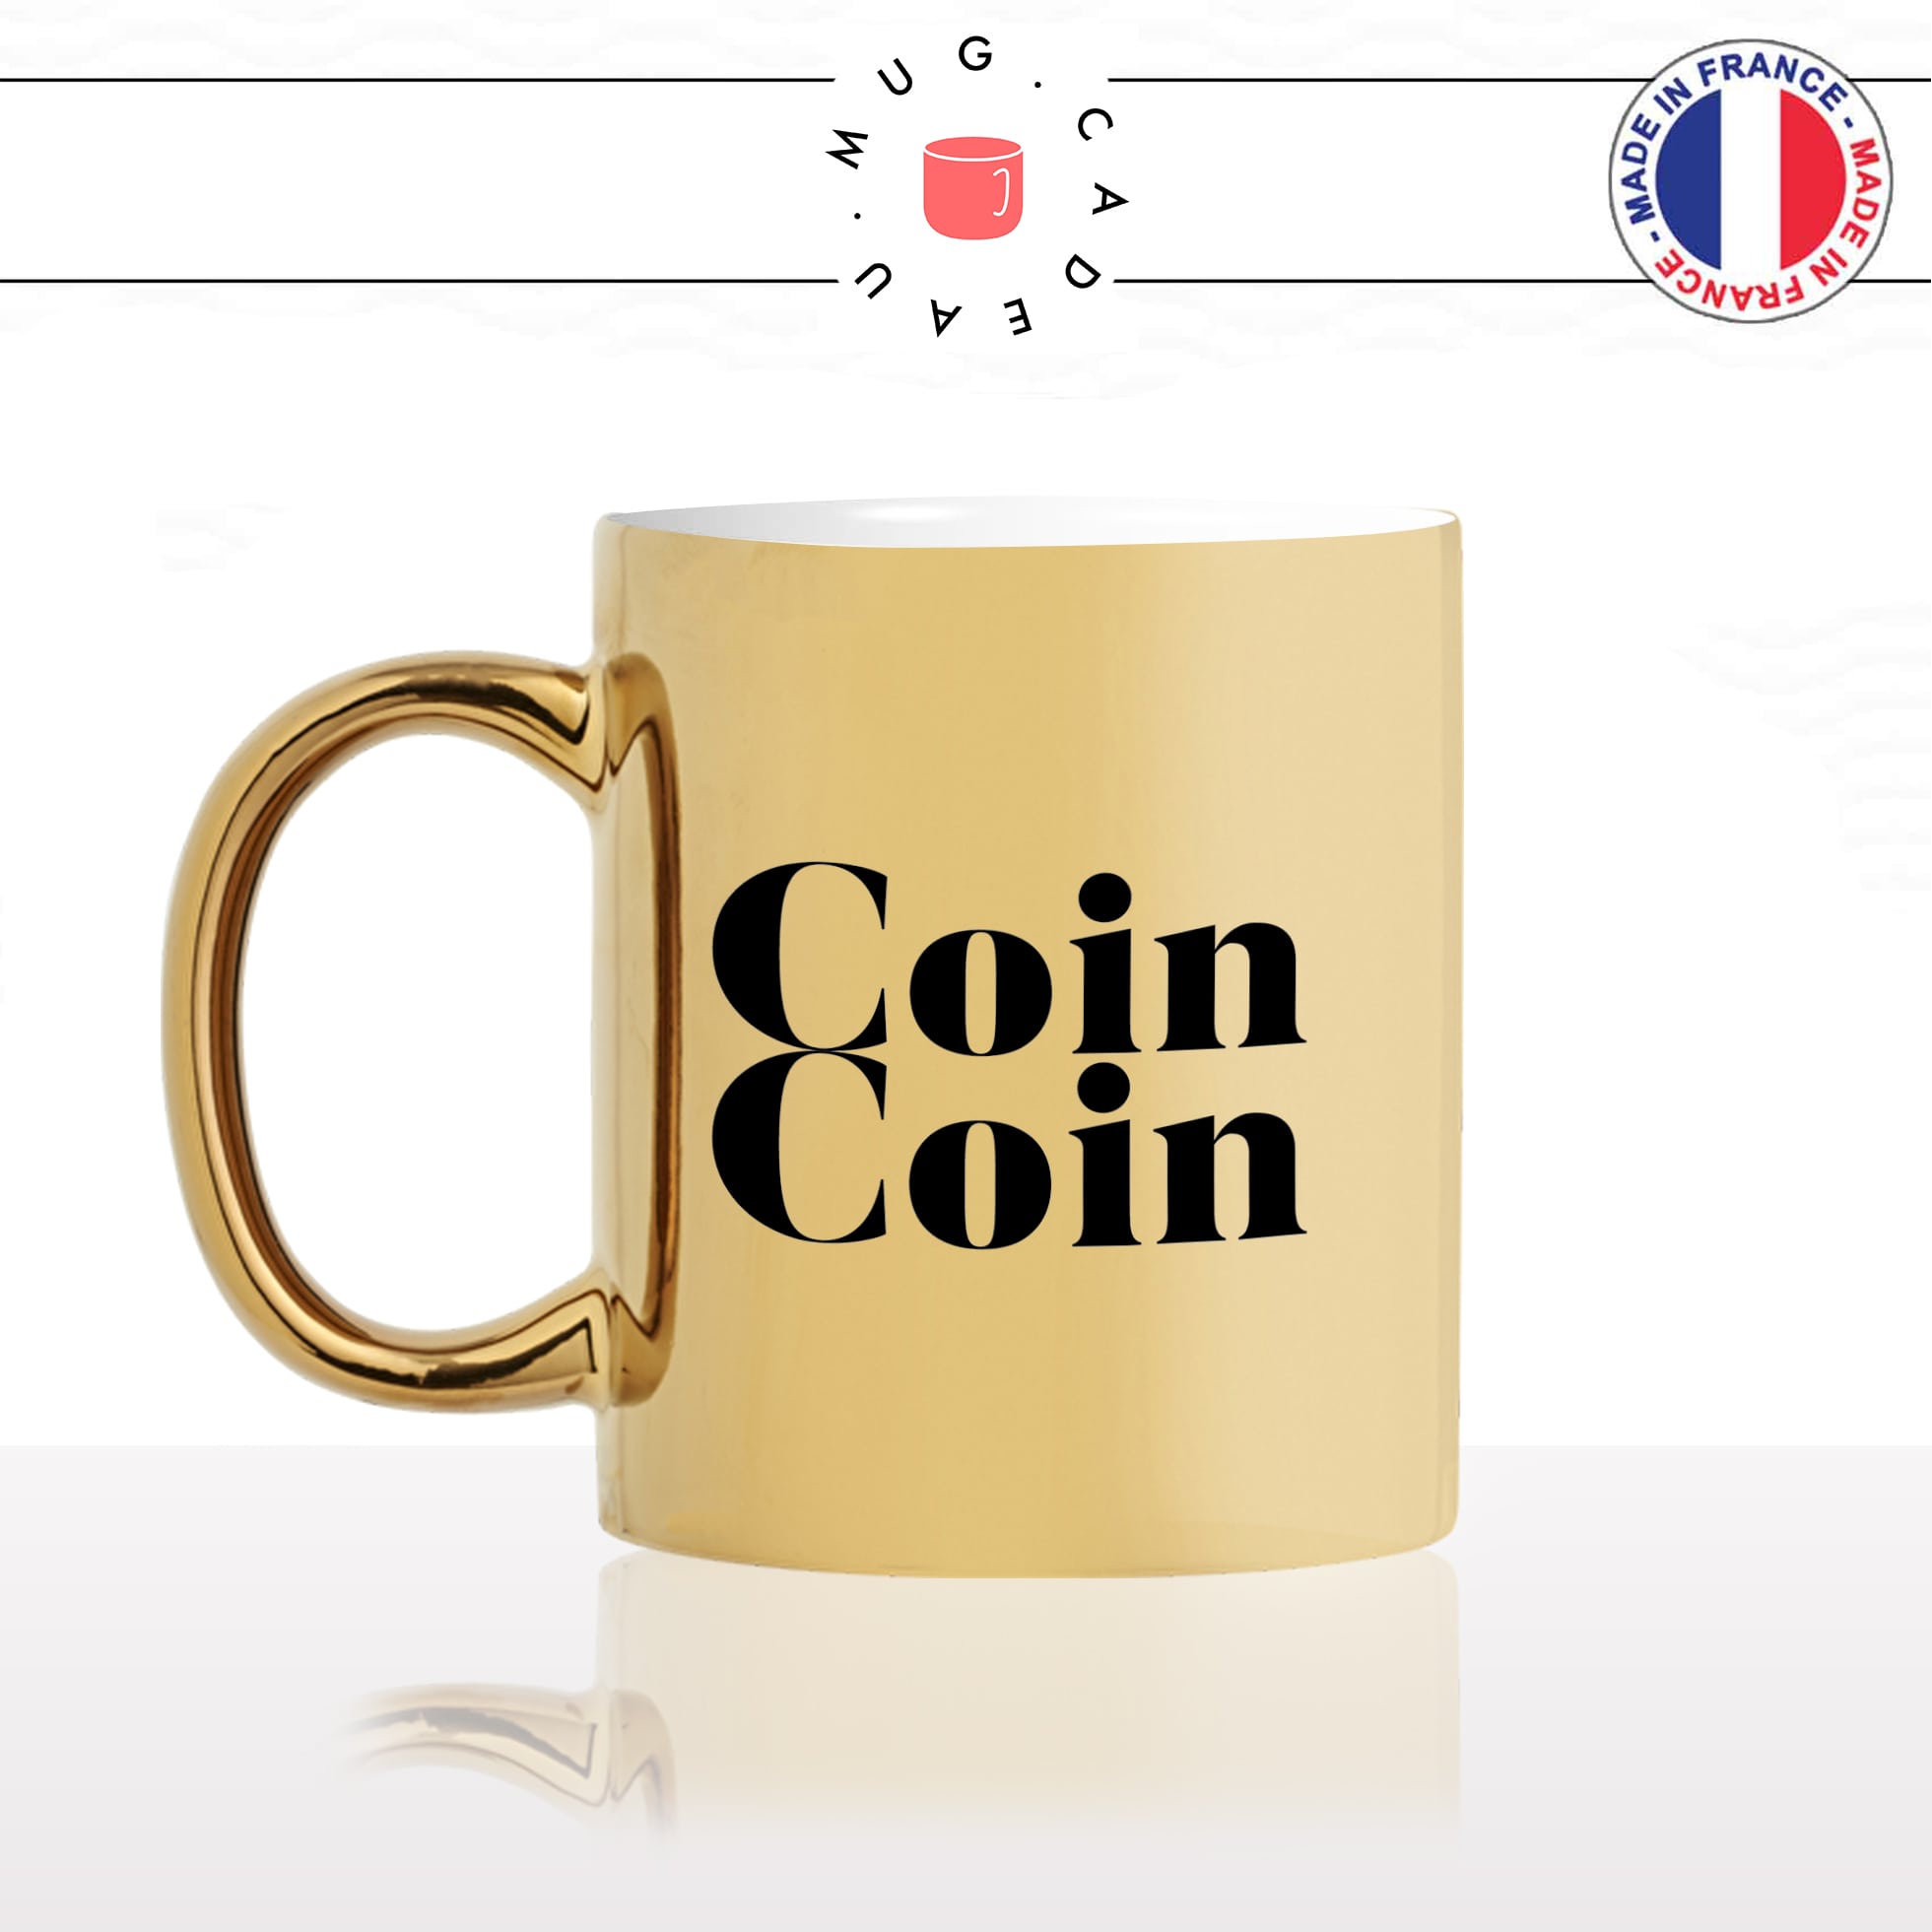 mug-tasse-doré-or-gold-canard-calligraphie-lettrine-mot-coin-coin-homme-couple-décoration-ami-idée-cadeau-original-personnalisé-café-thé-min